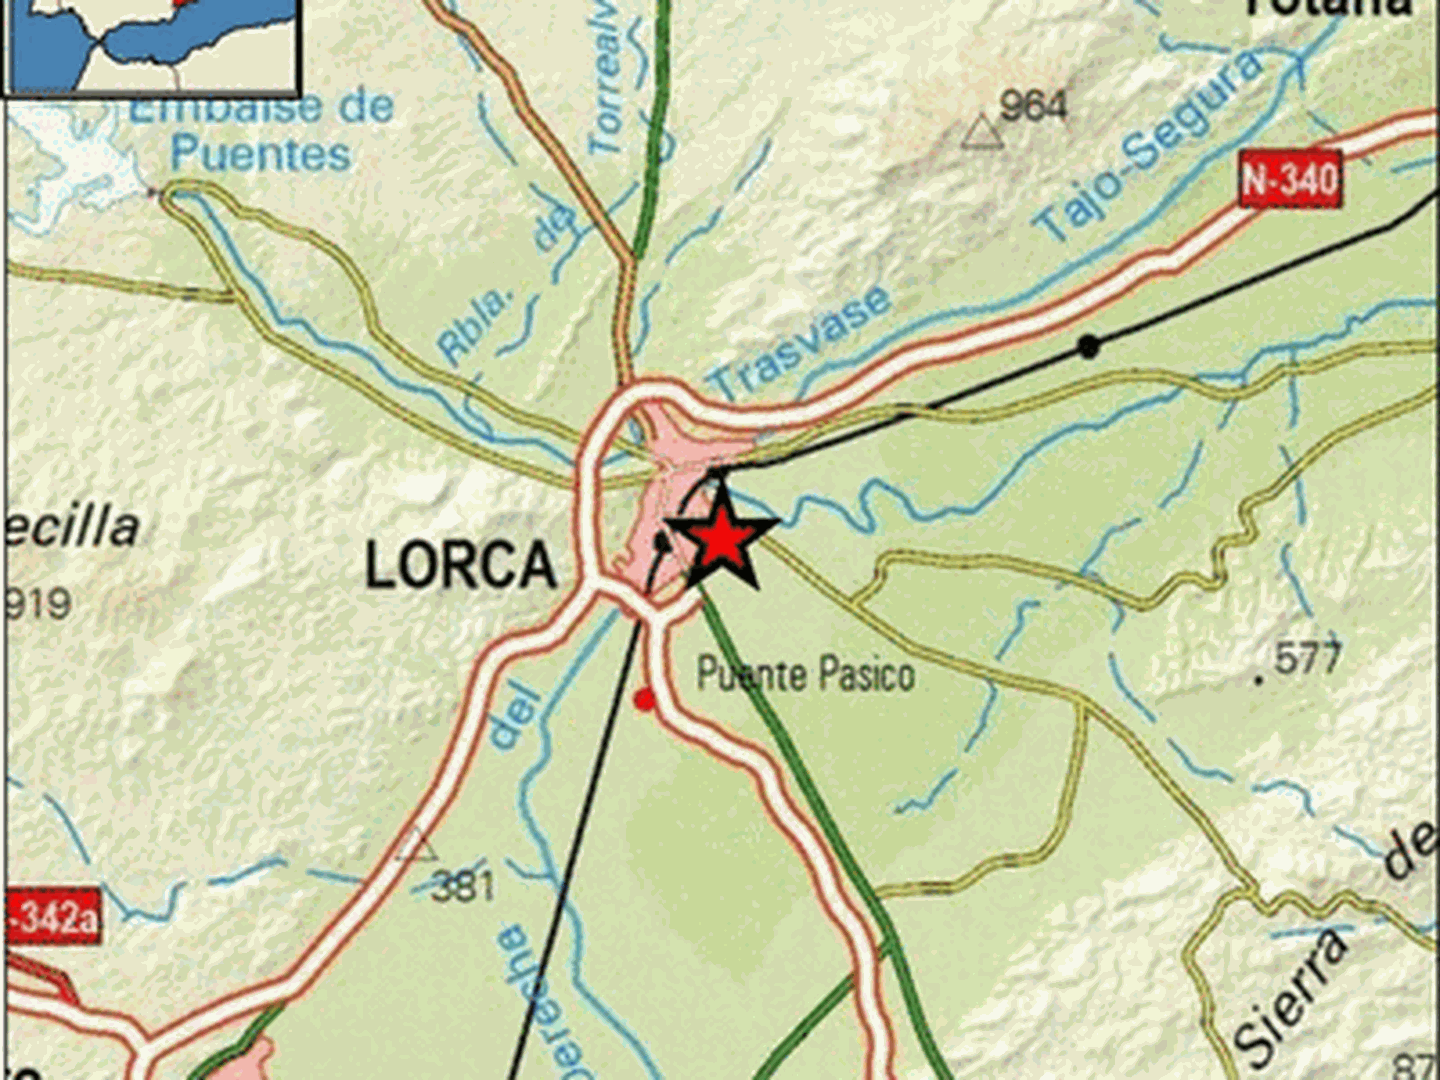 Epicentro del terremoto en las proximidades de Lorca. (IGN)